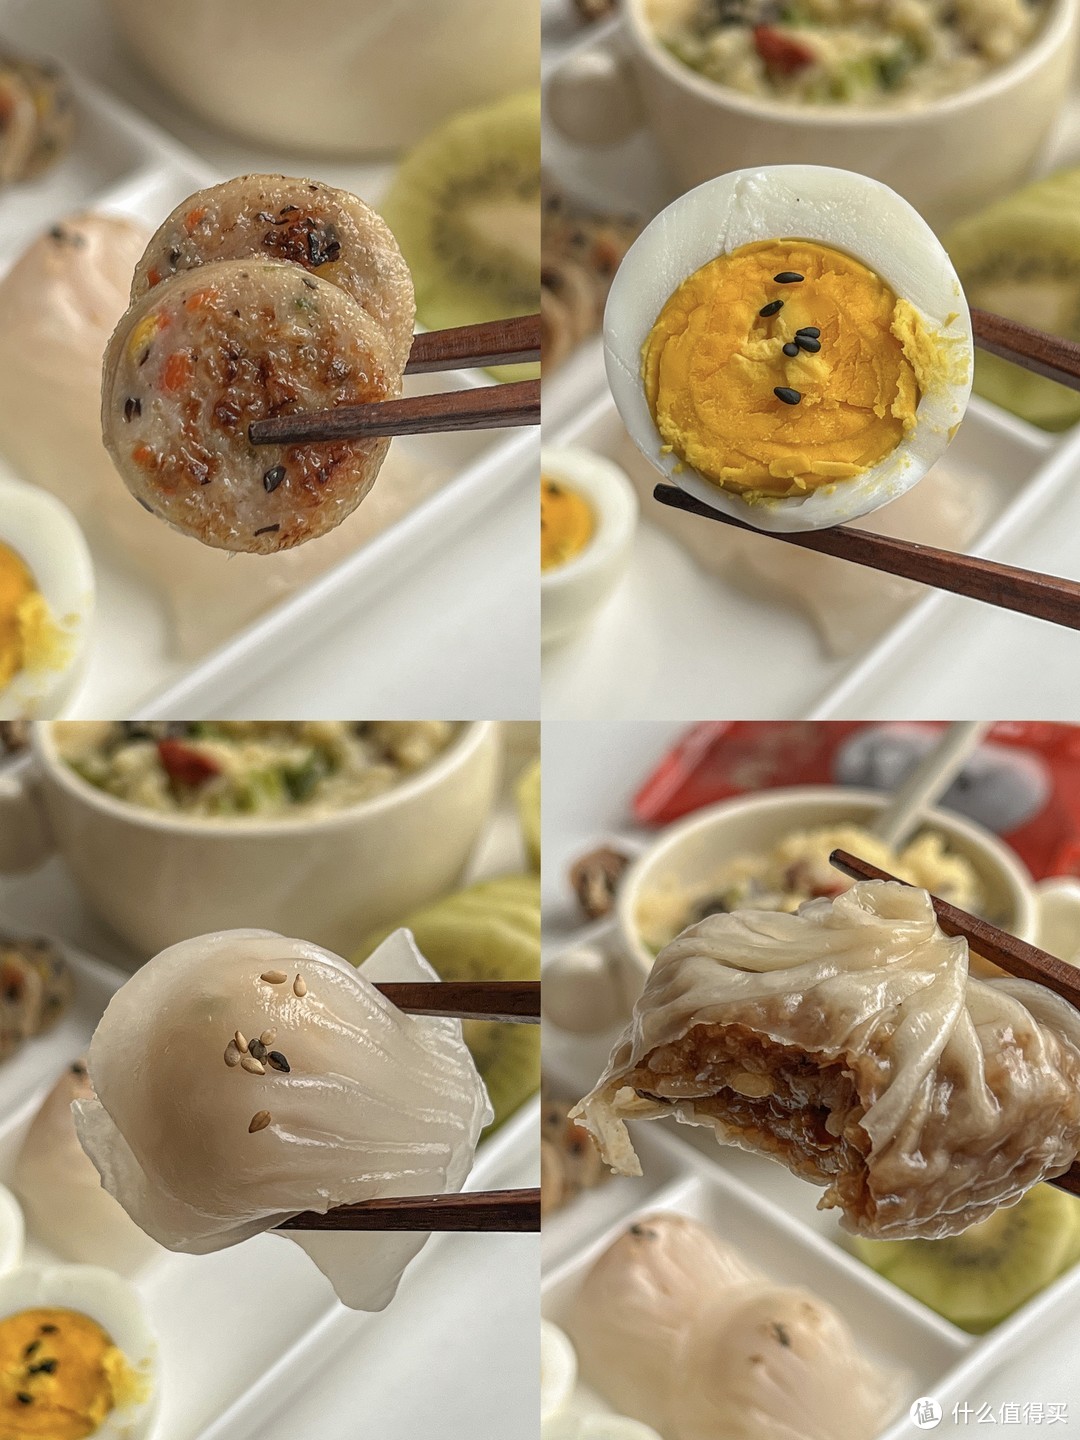 中式早餐 海参小米粥&烧卖&虾饺&膳食肠